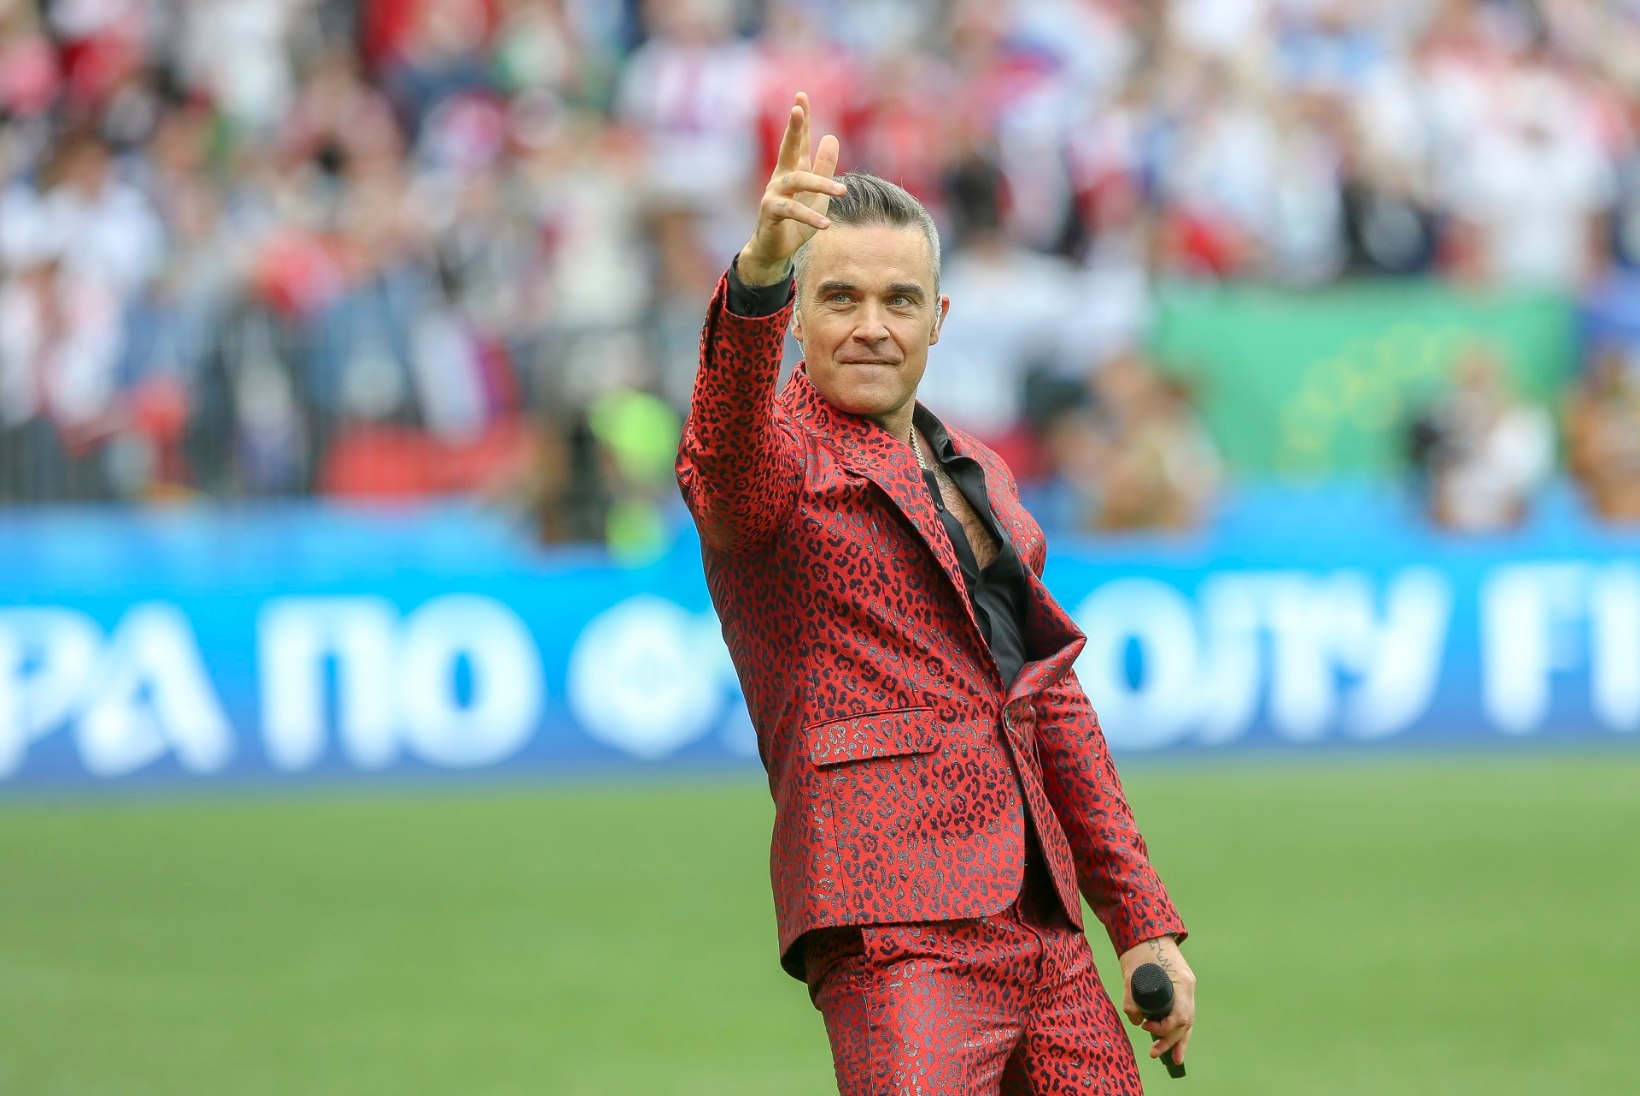 VIDEO | JALKAFÄNNID MARUS: Robbie Williams vehkis kaamera ees keskmise sõrmega